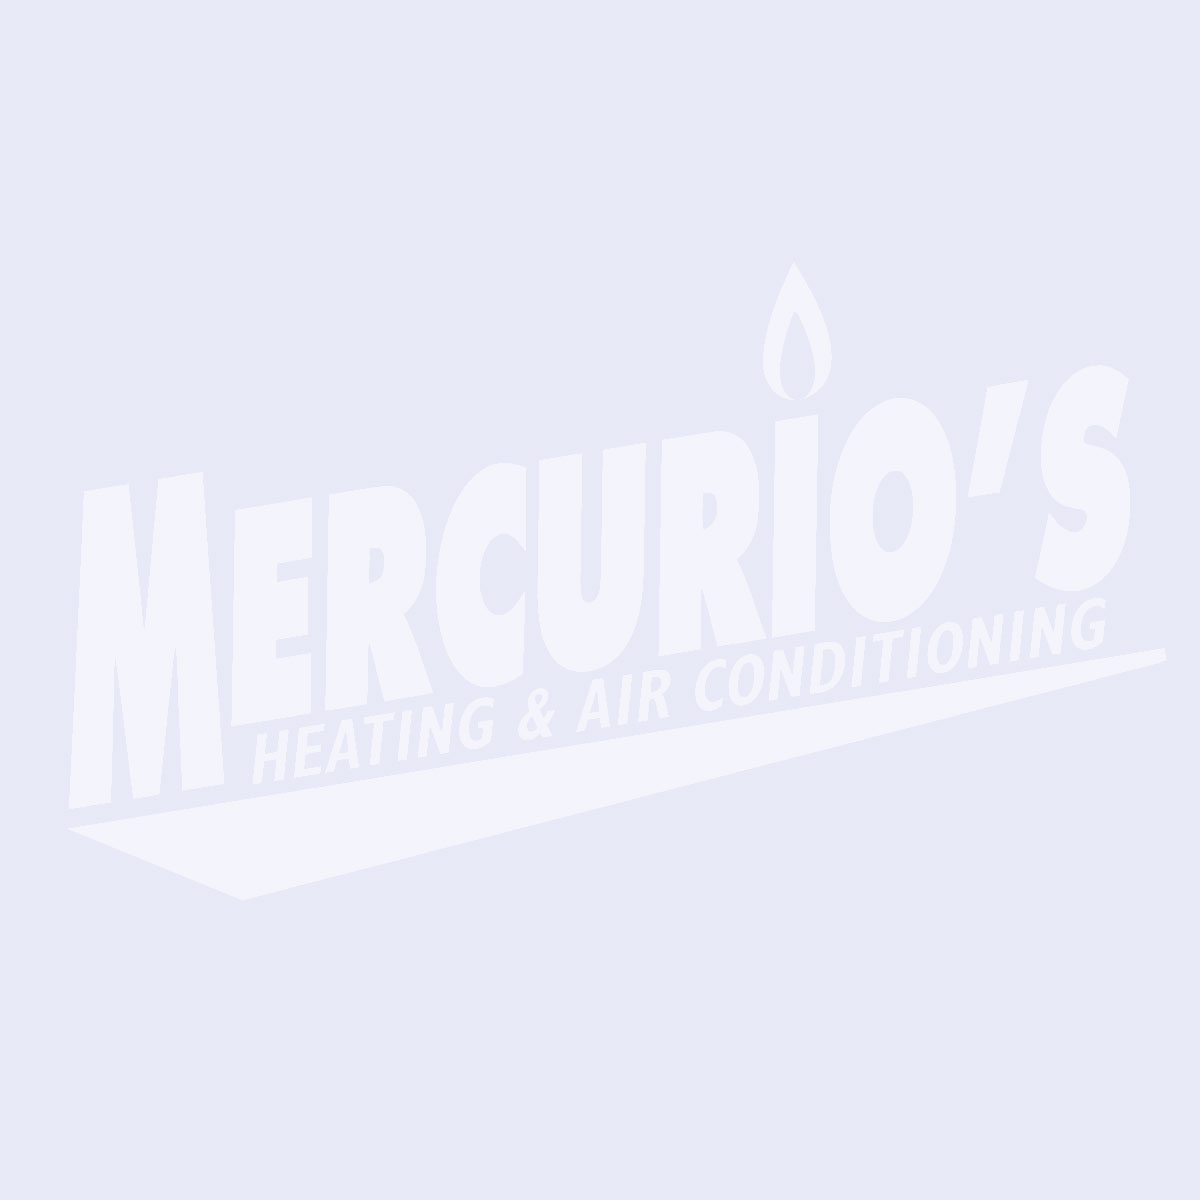 Mercurios logo